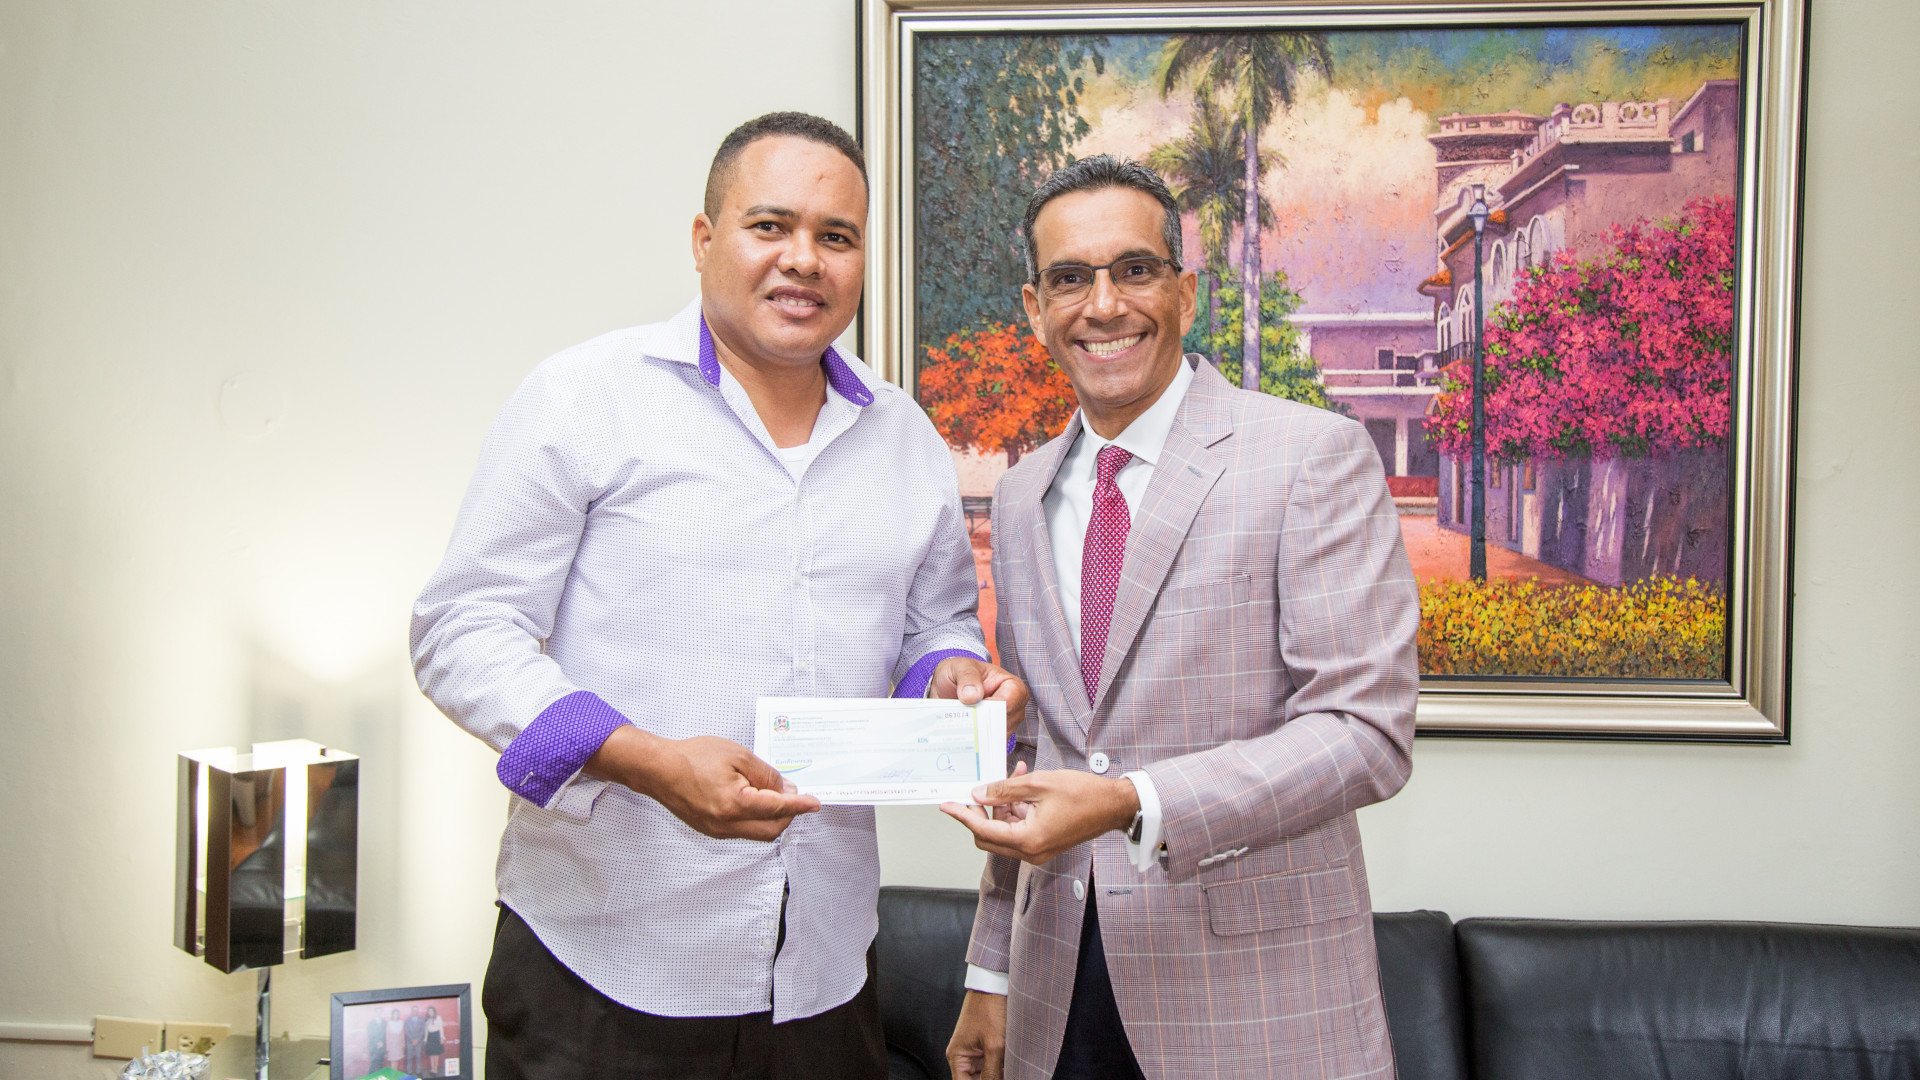 REPÚBLICA DOMINICANA: Resultado de Visita Sorpresa a Montecristi, Gobierno entrega recursos para terminar construcción Club Cultural Juan Pablo Duarte